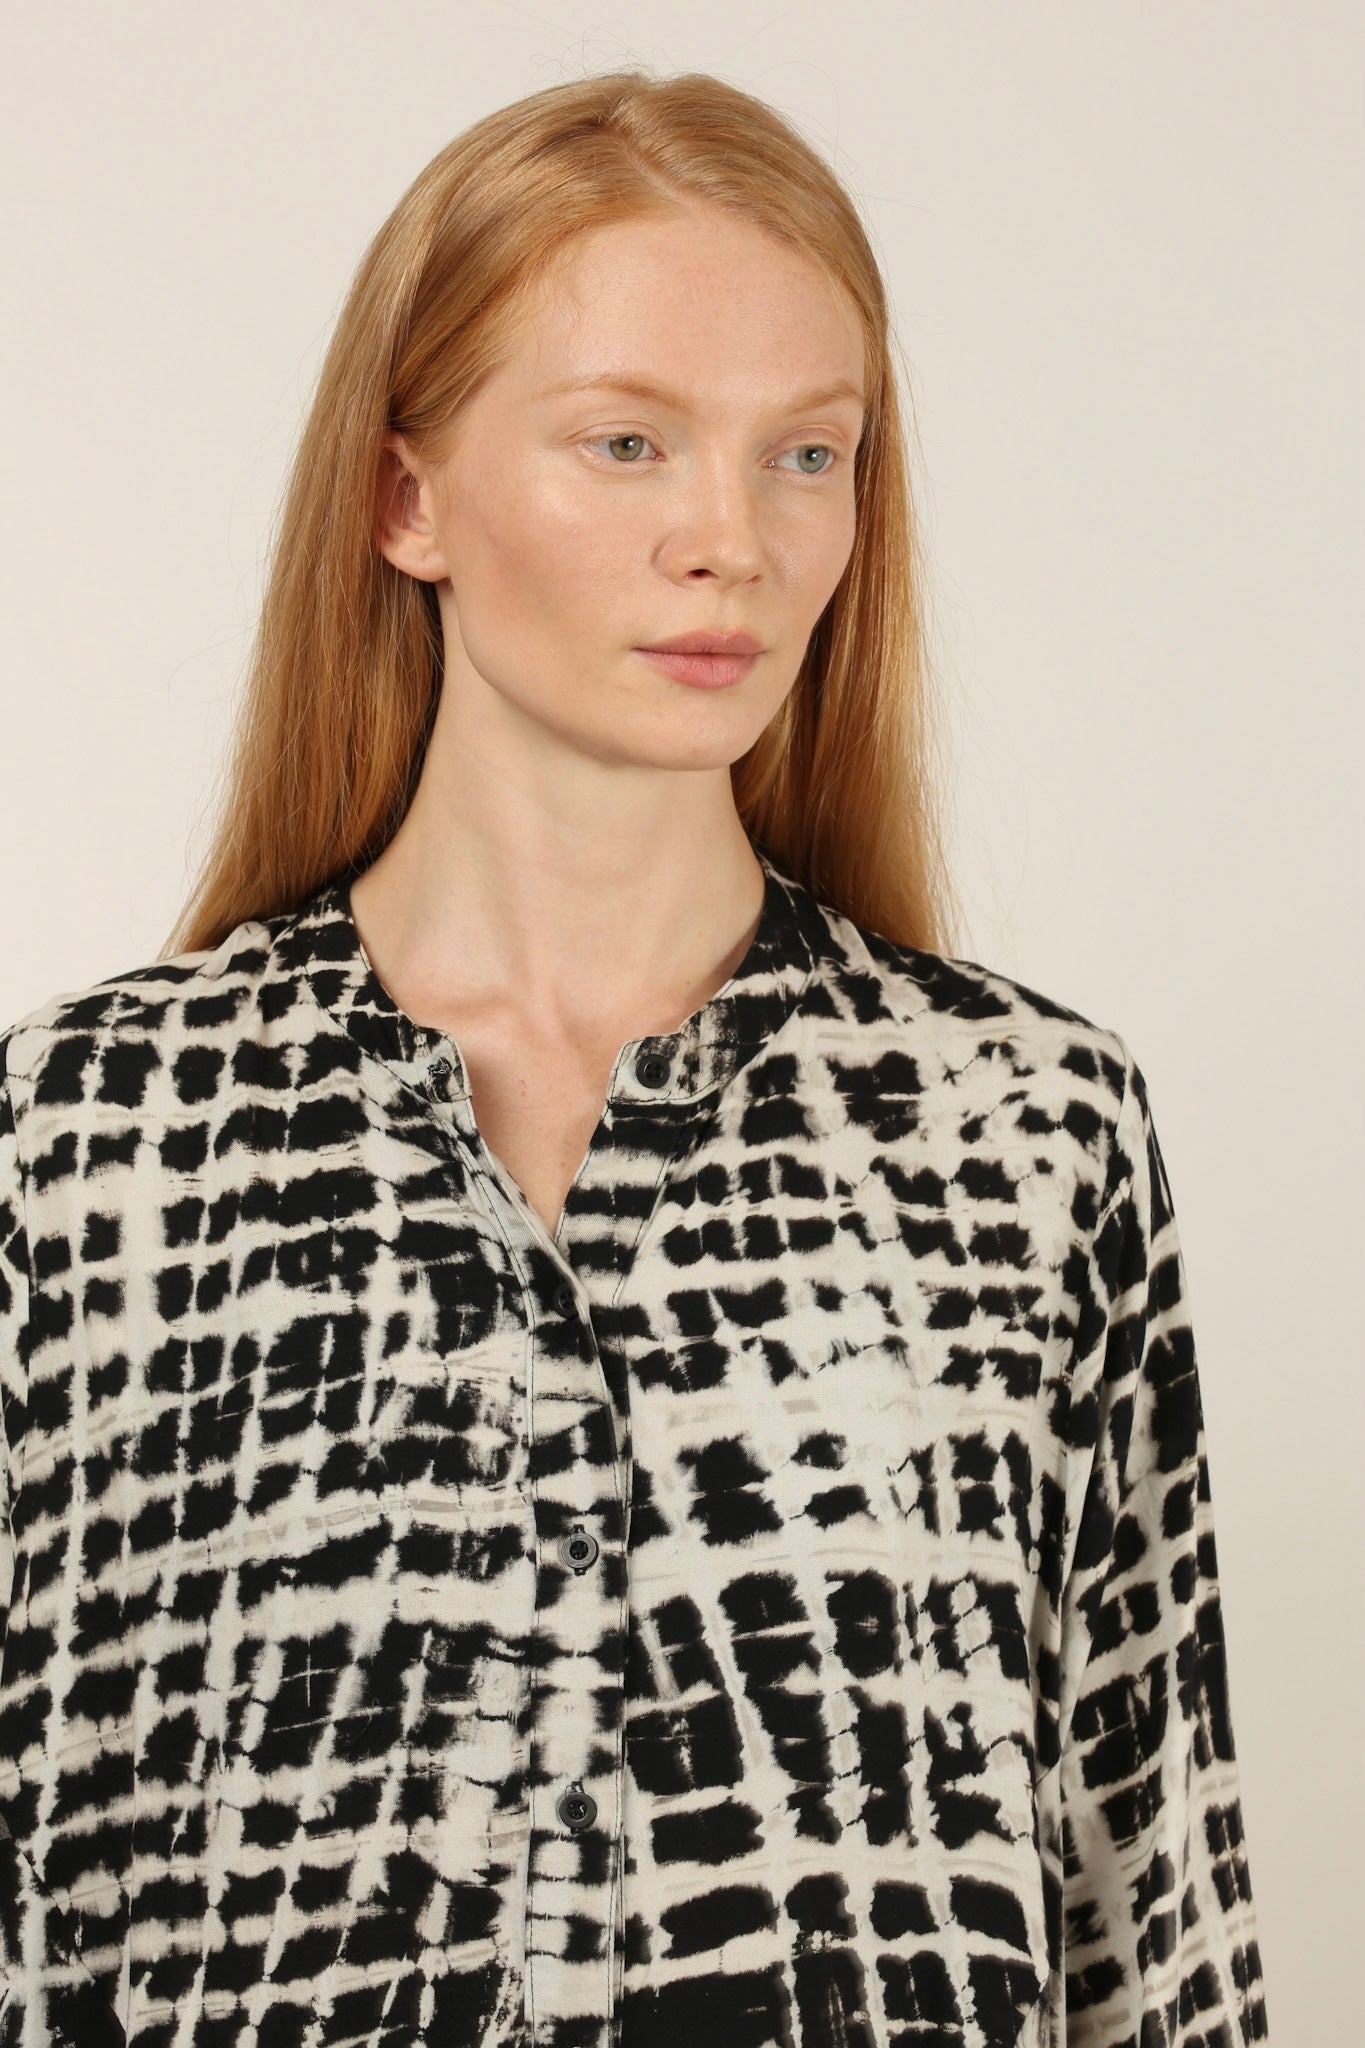 KIRAZ COTTON DRESS - sustainably made MOMO NEW YORK sustainable clothing, dress slow fashion